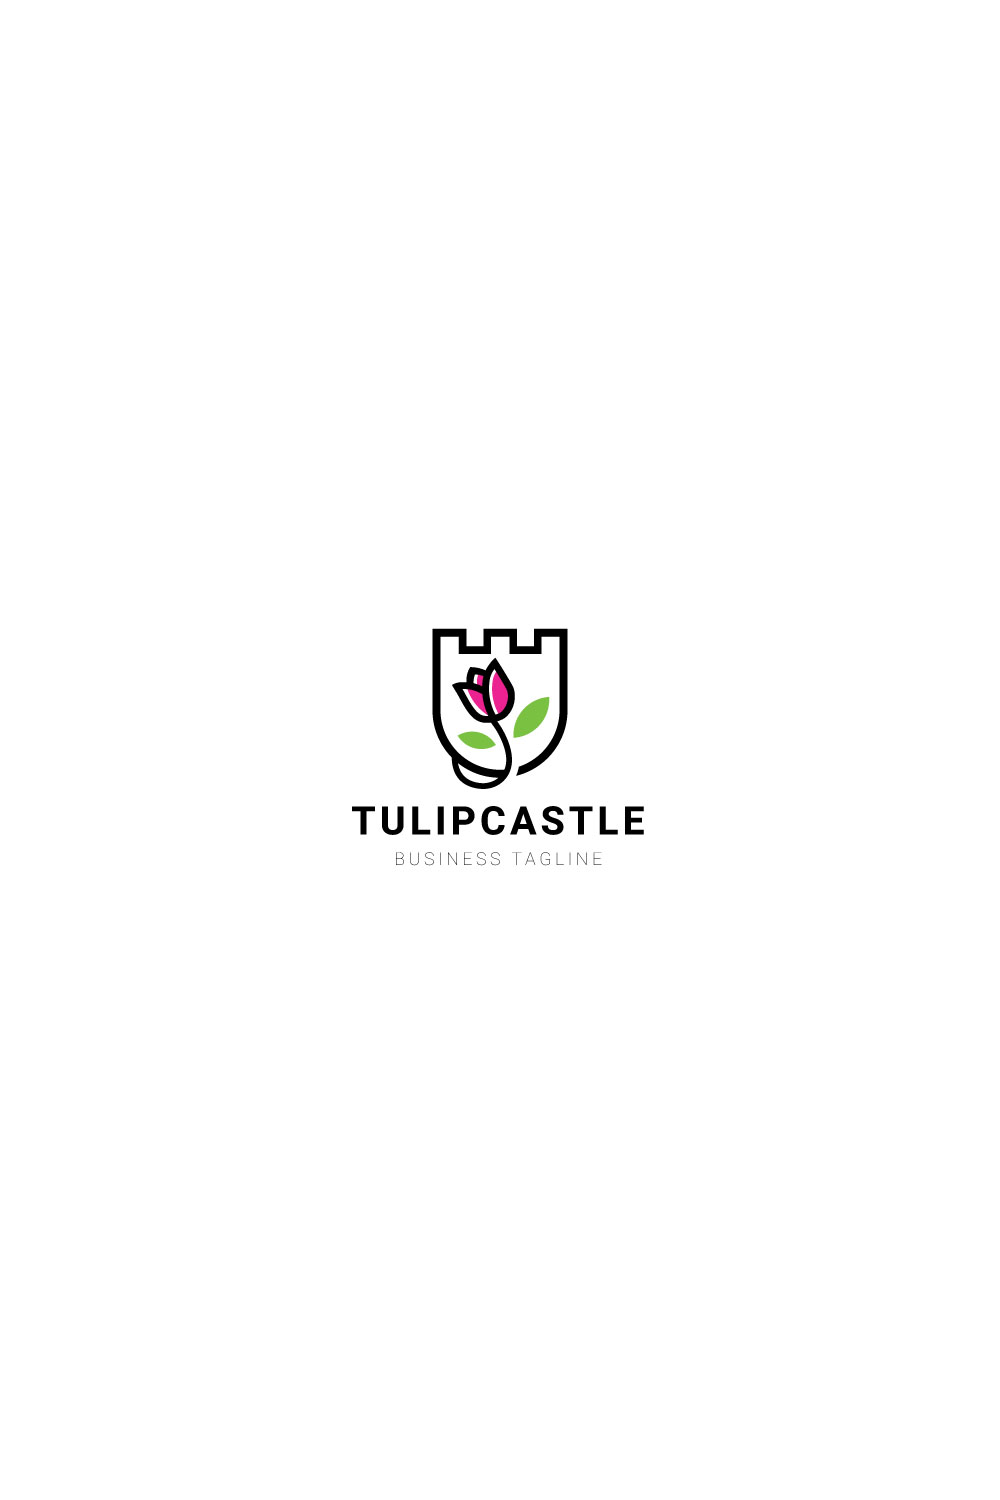 Tulip Castle Logo design pinterest preview image.